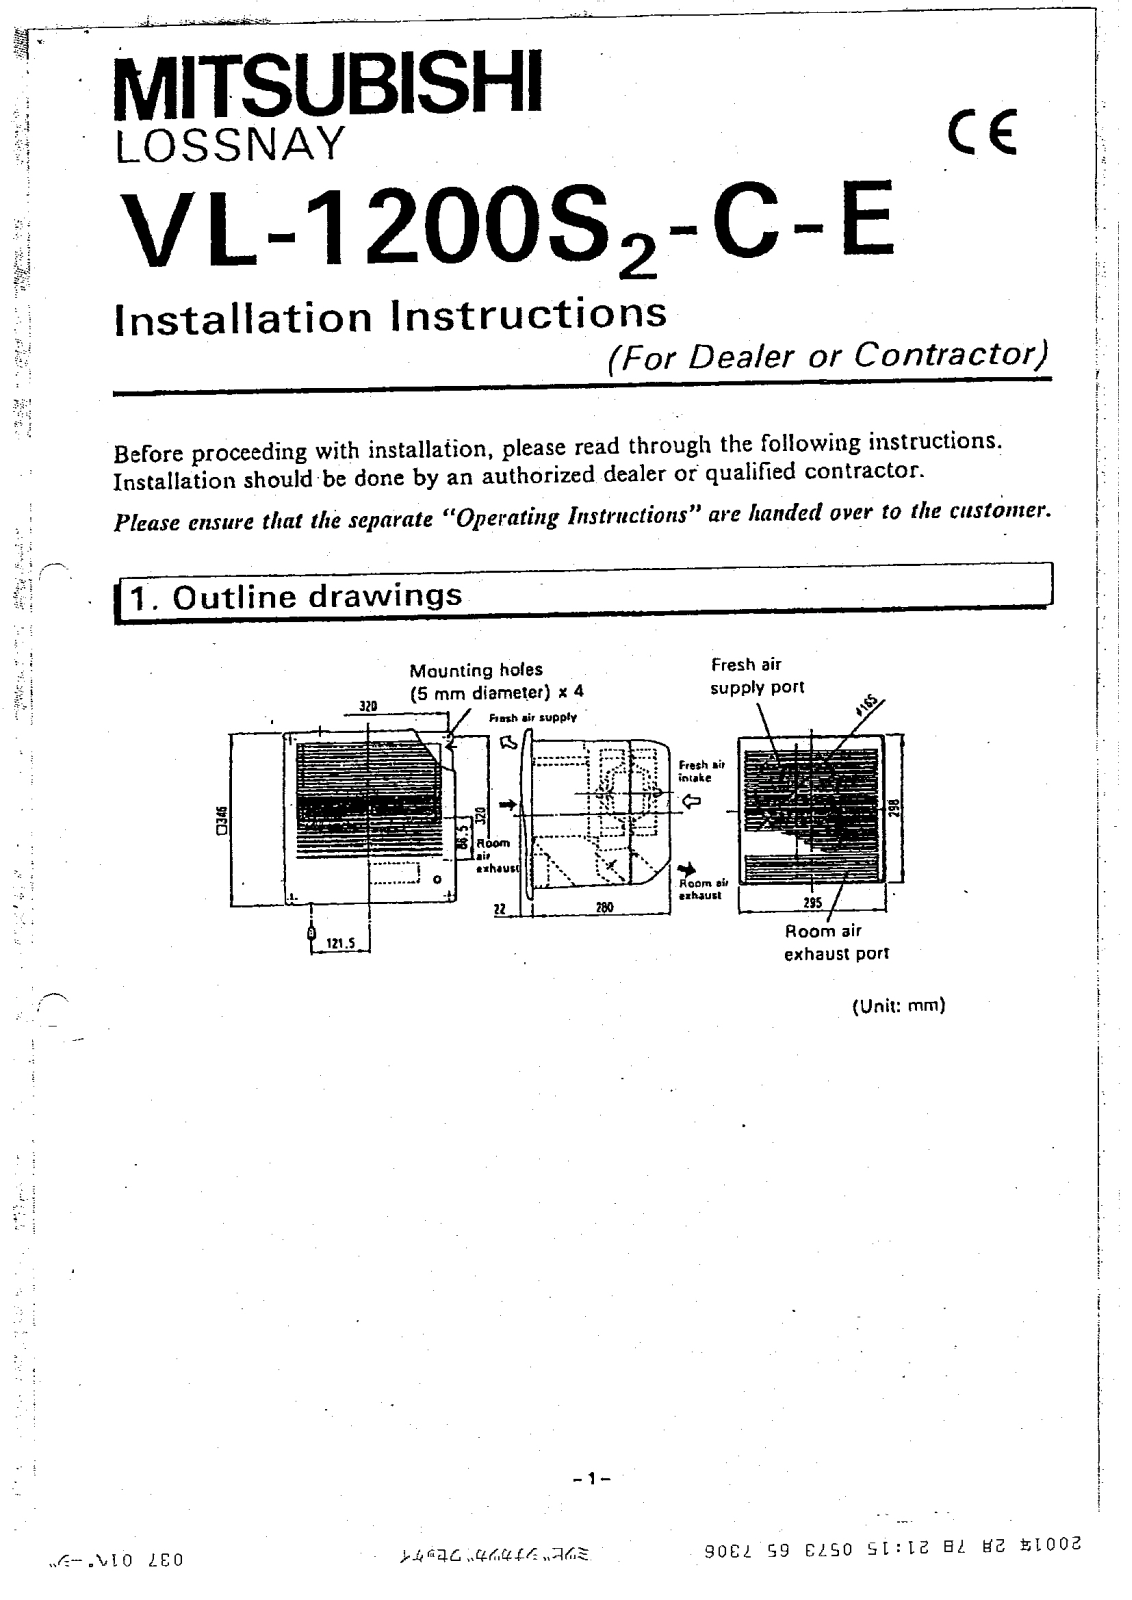 Mitsubishi Lossnay VL-1200 Installation Manual